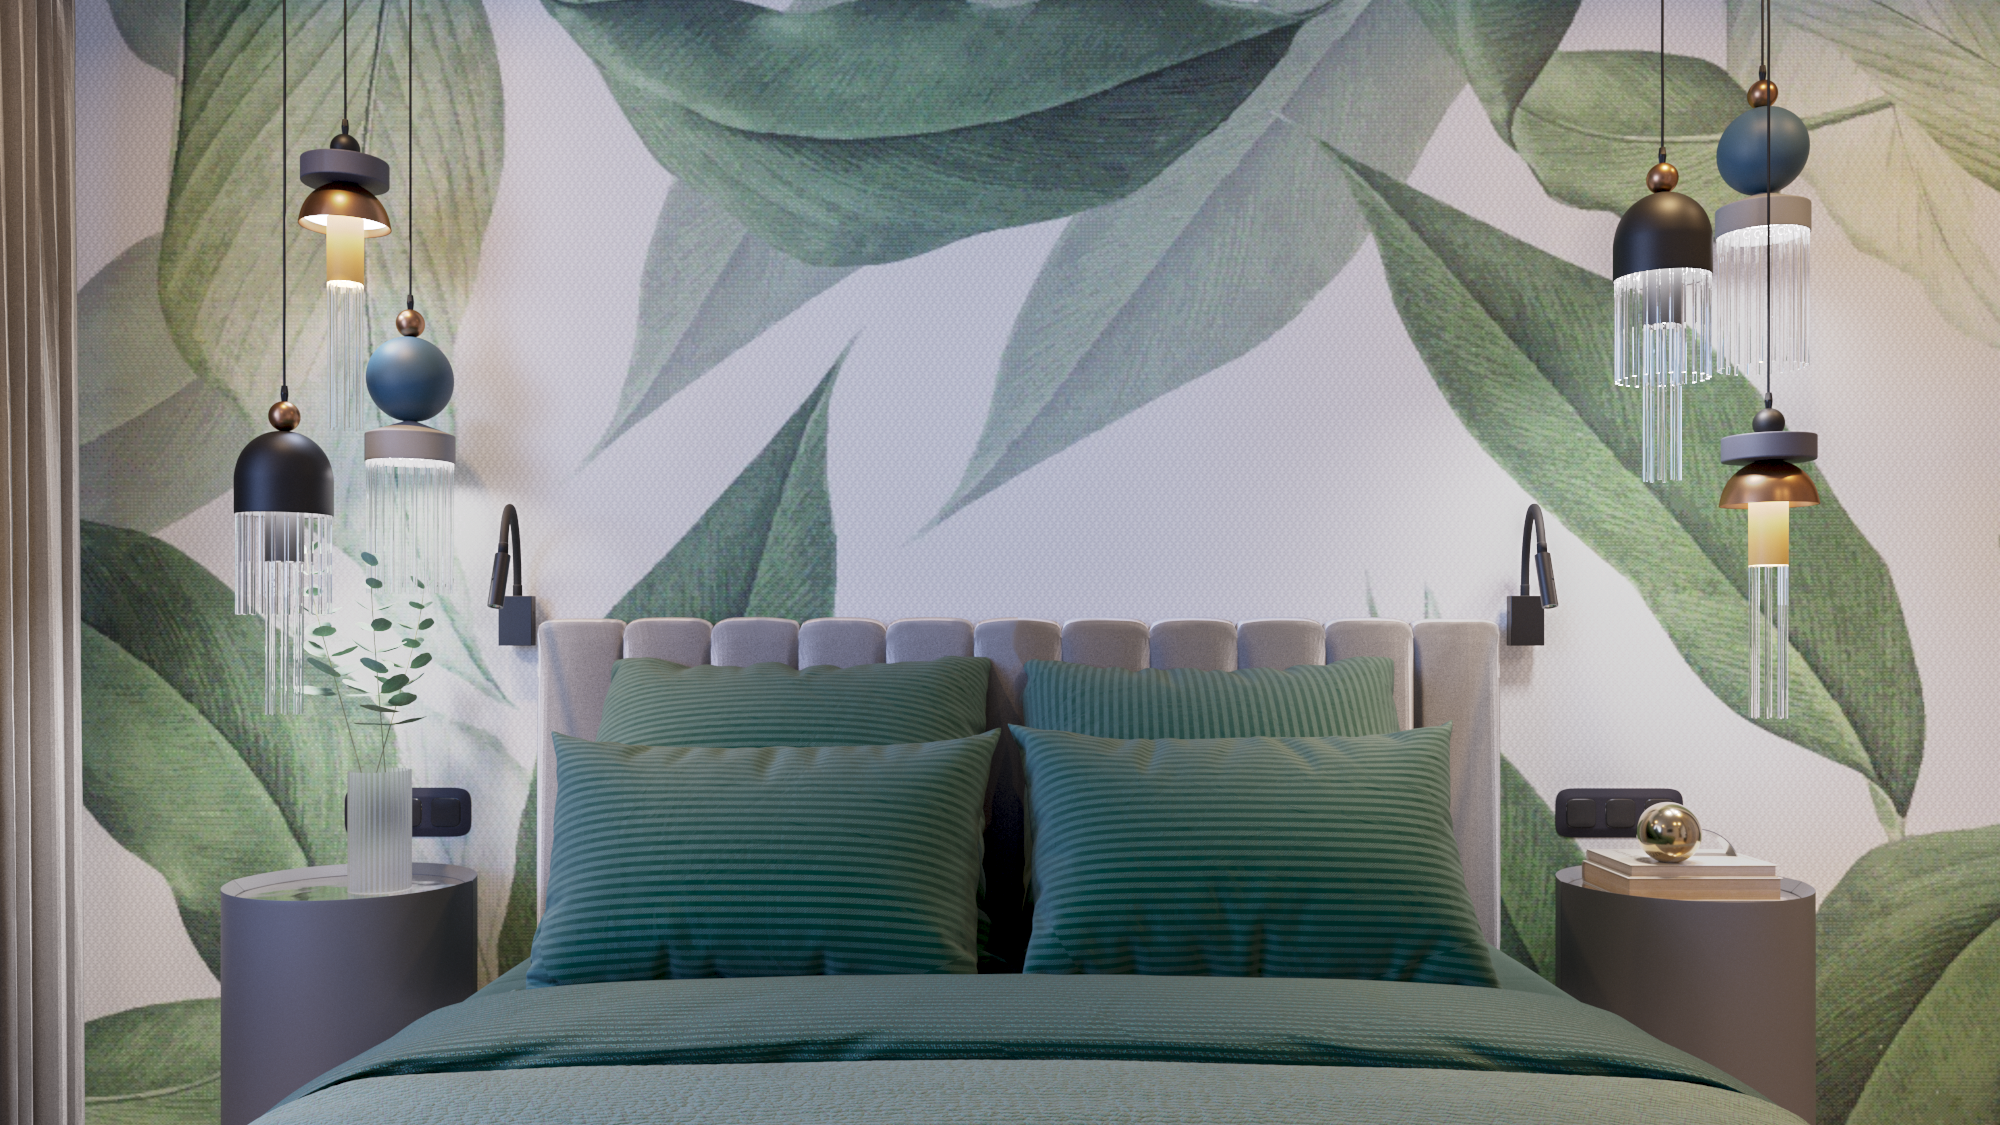 Дизайн интерьера спальни трехкомнатной квартиры в панельном доме II29
by alessandra grigoreva
фотообои
зеленый в дизайне интерьера
хрущевка
брежневка